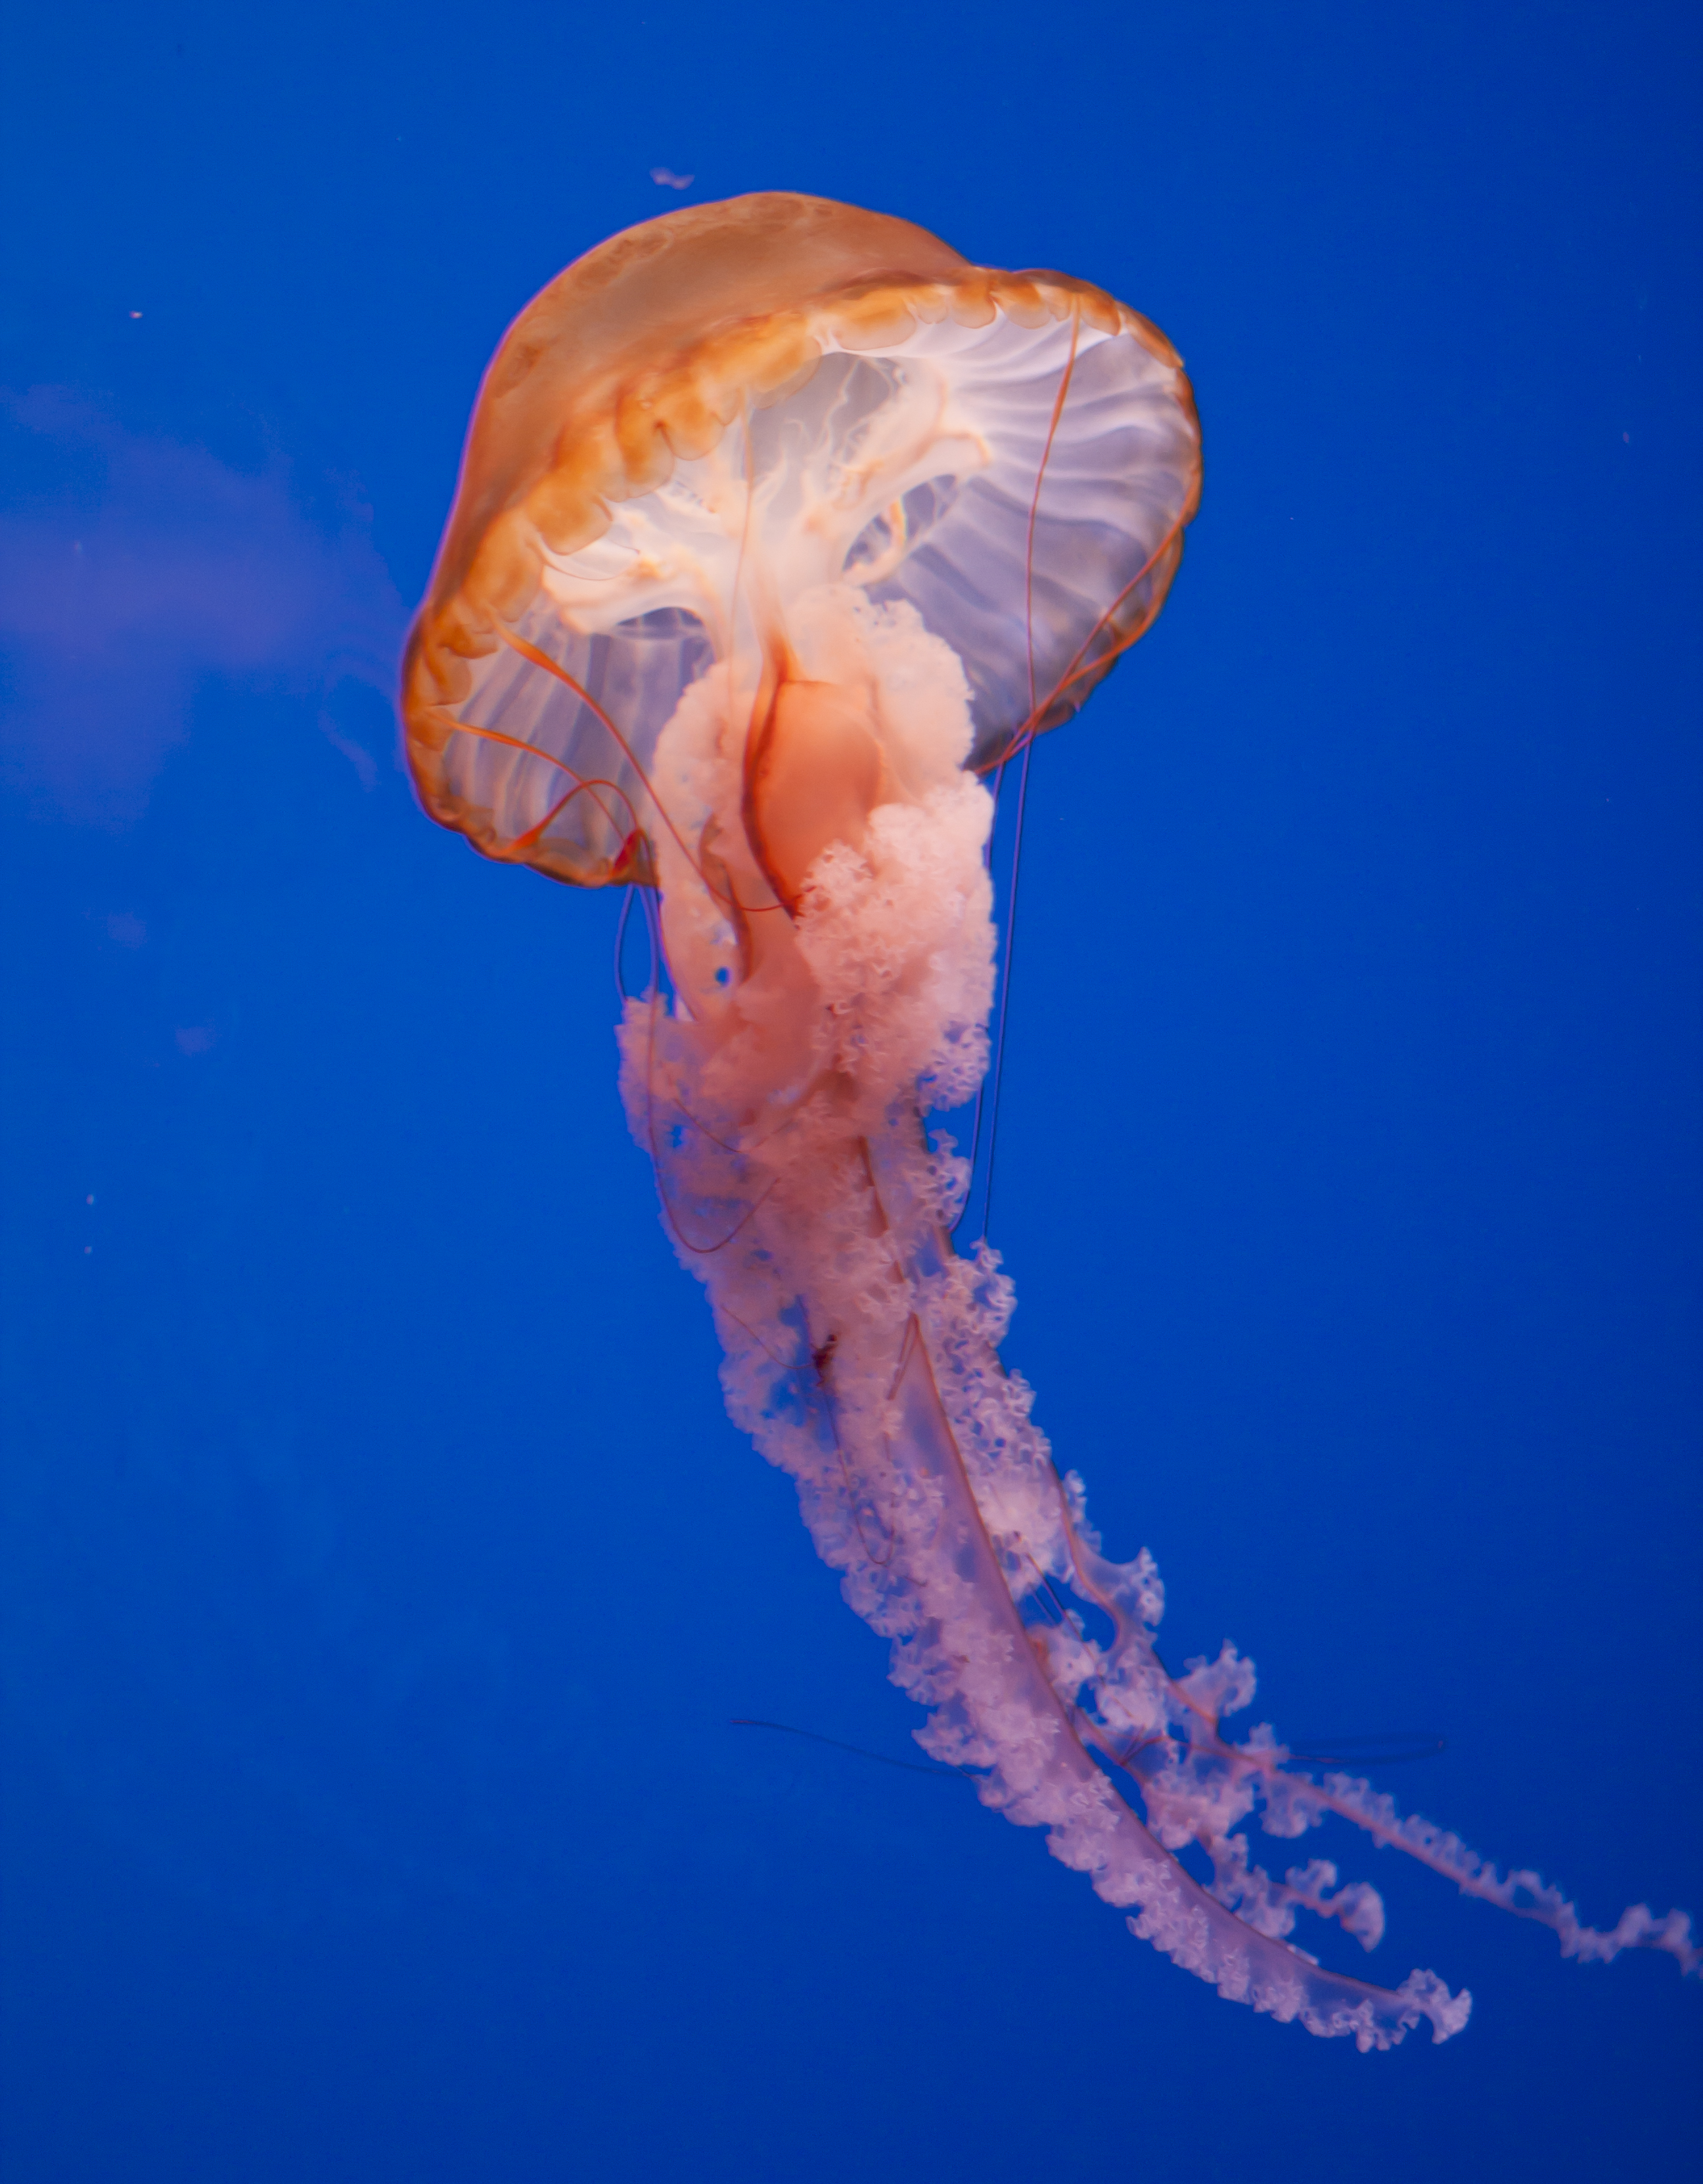 Jellyfish photo 